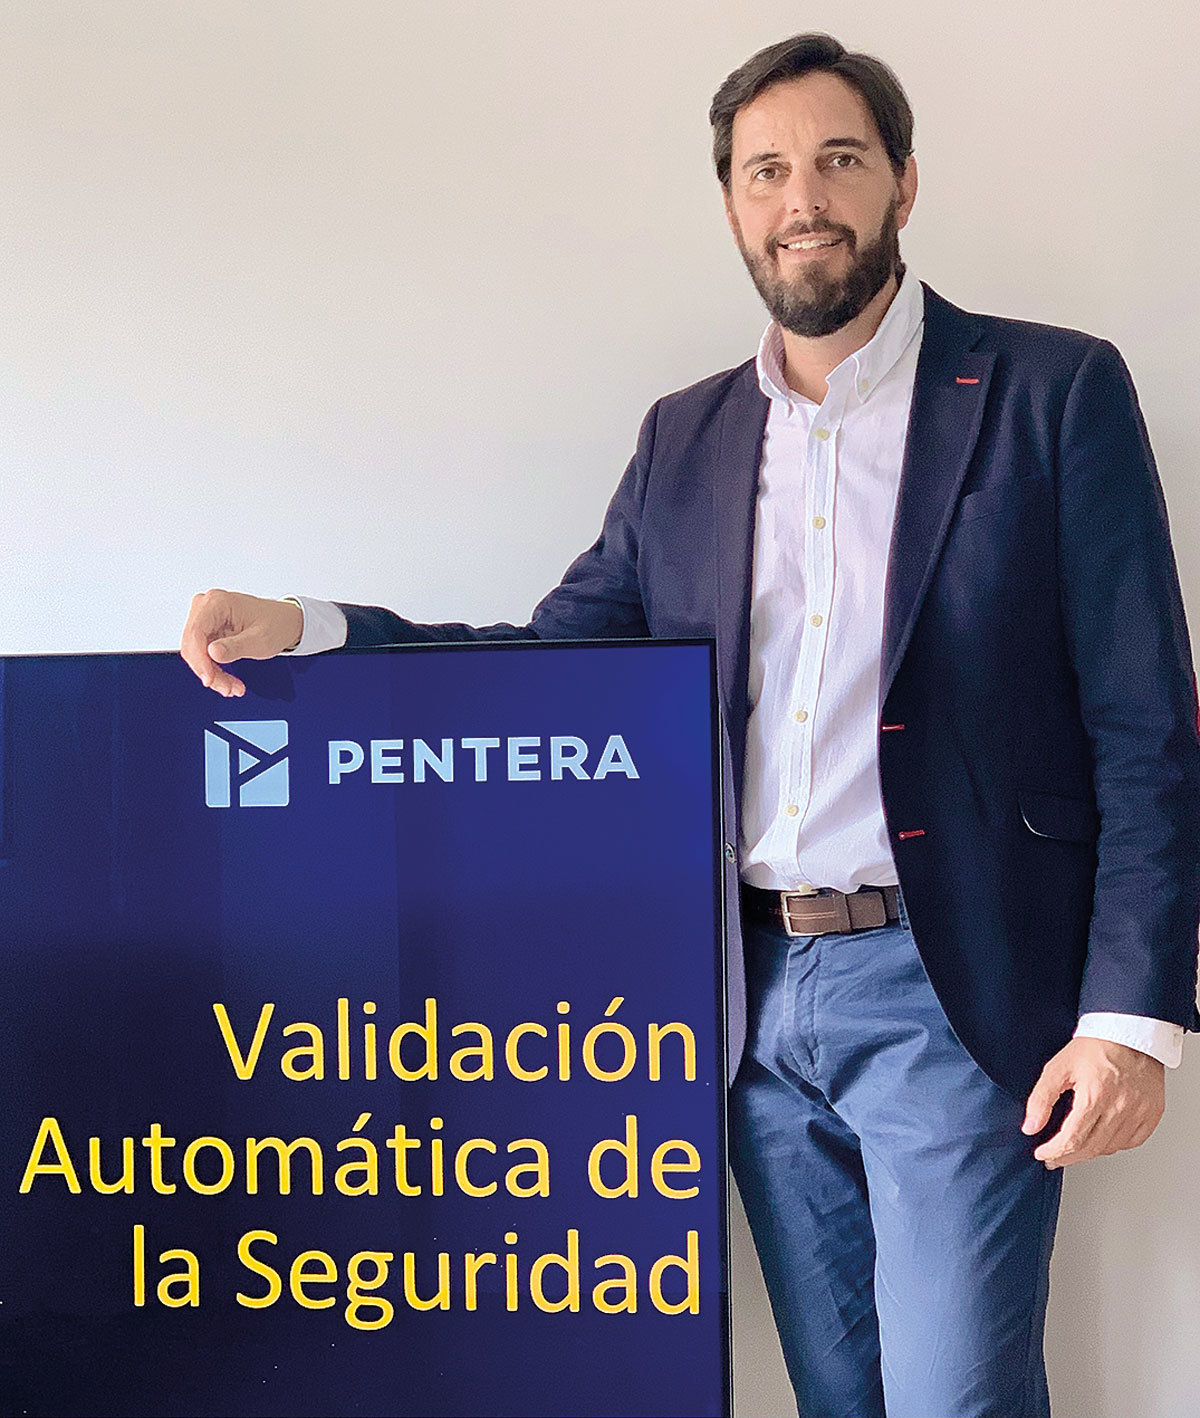 Ramn Lucini  Pentera. Regional Sales Manager Iberia.